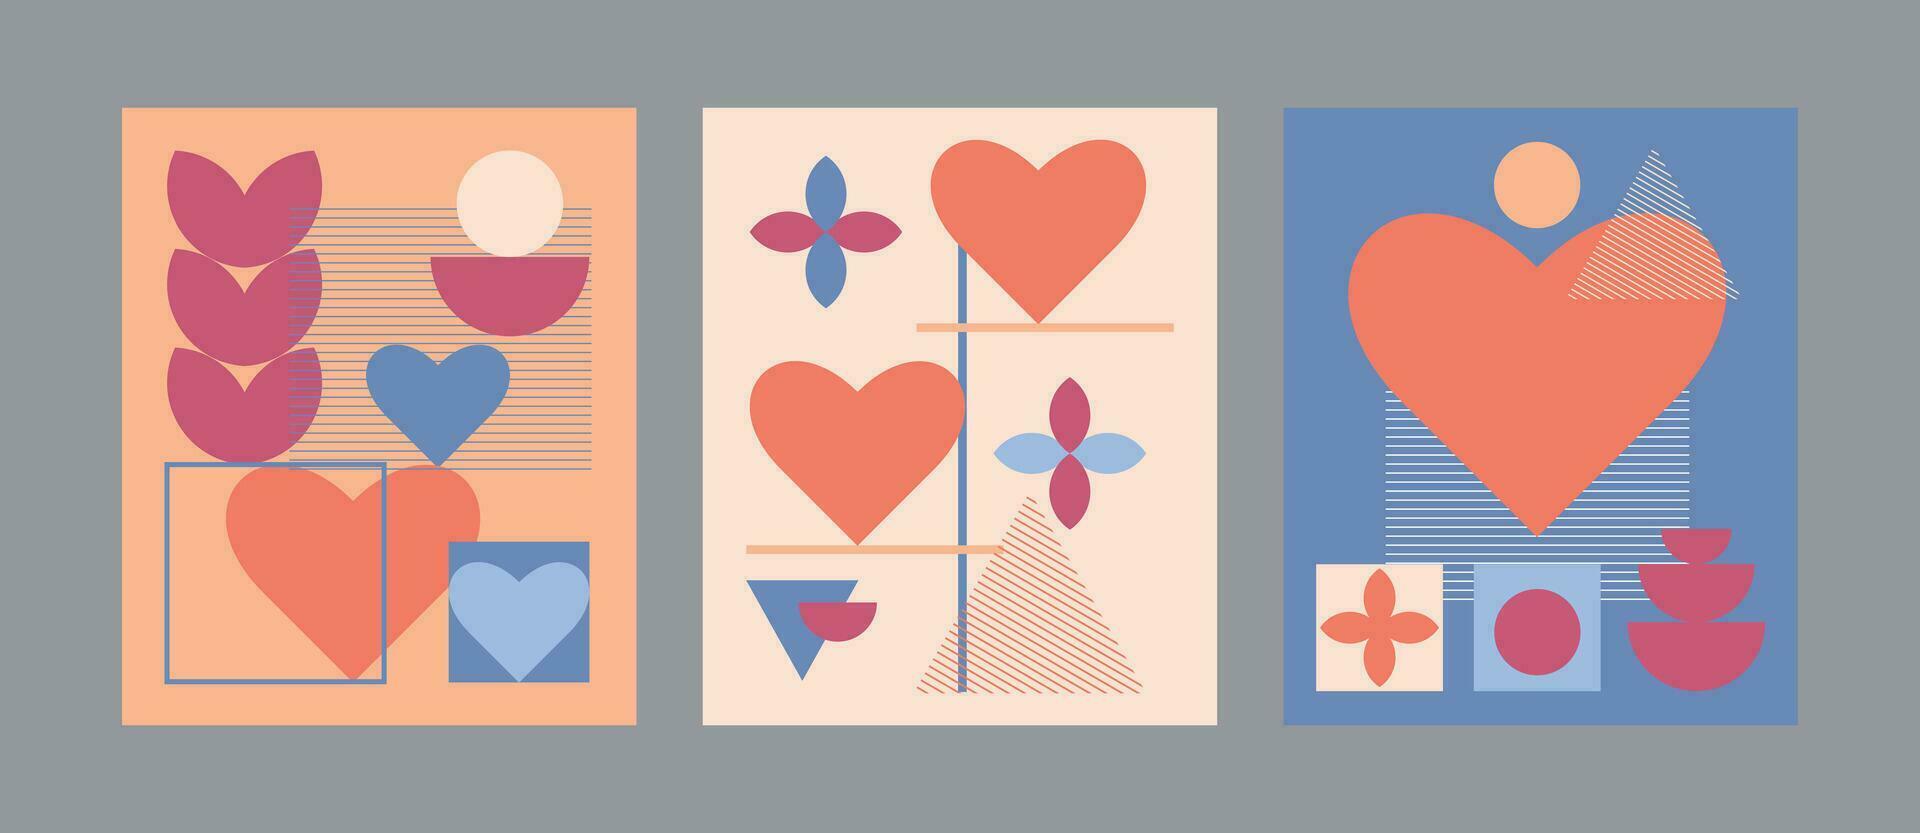 uppsättning i bauhaus stil med hjärta former. design för hjärtans dag. design för kort, affischer, banderoller, webb reklam. vektor